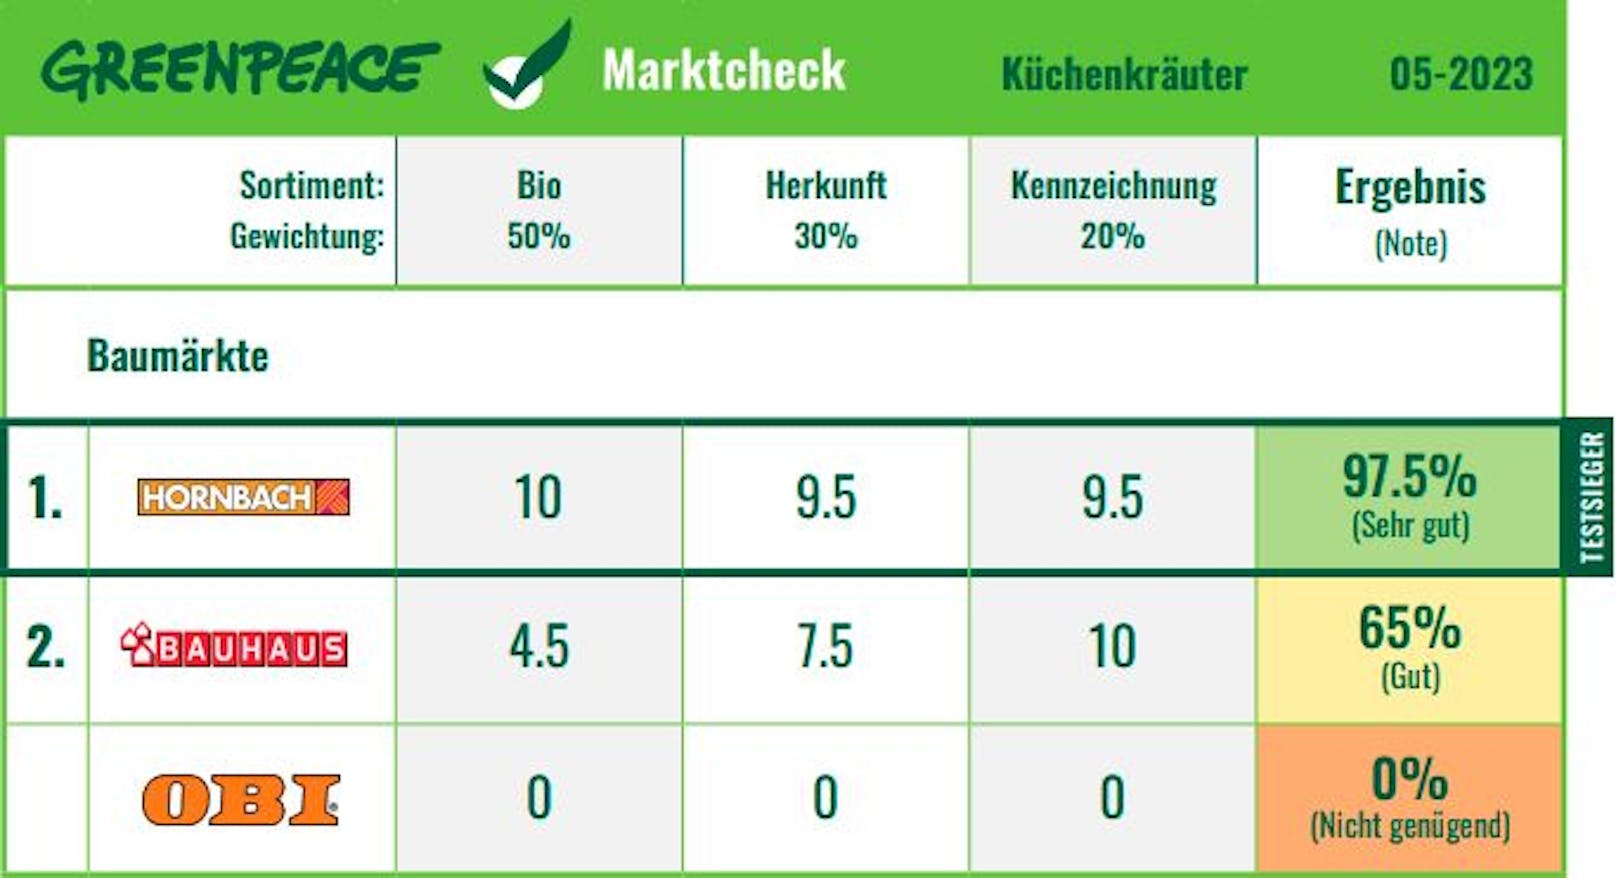 <strong>Baumärkte</strong> im Ranking des Küchenkräuter-Marktchecks von Greenpeace.